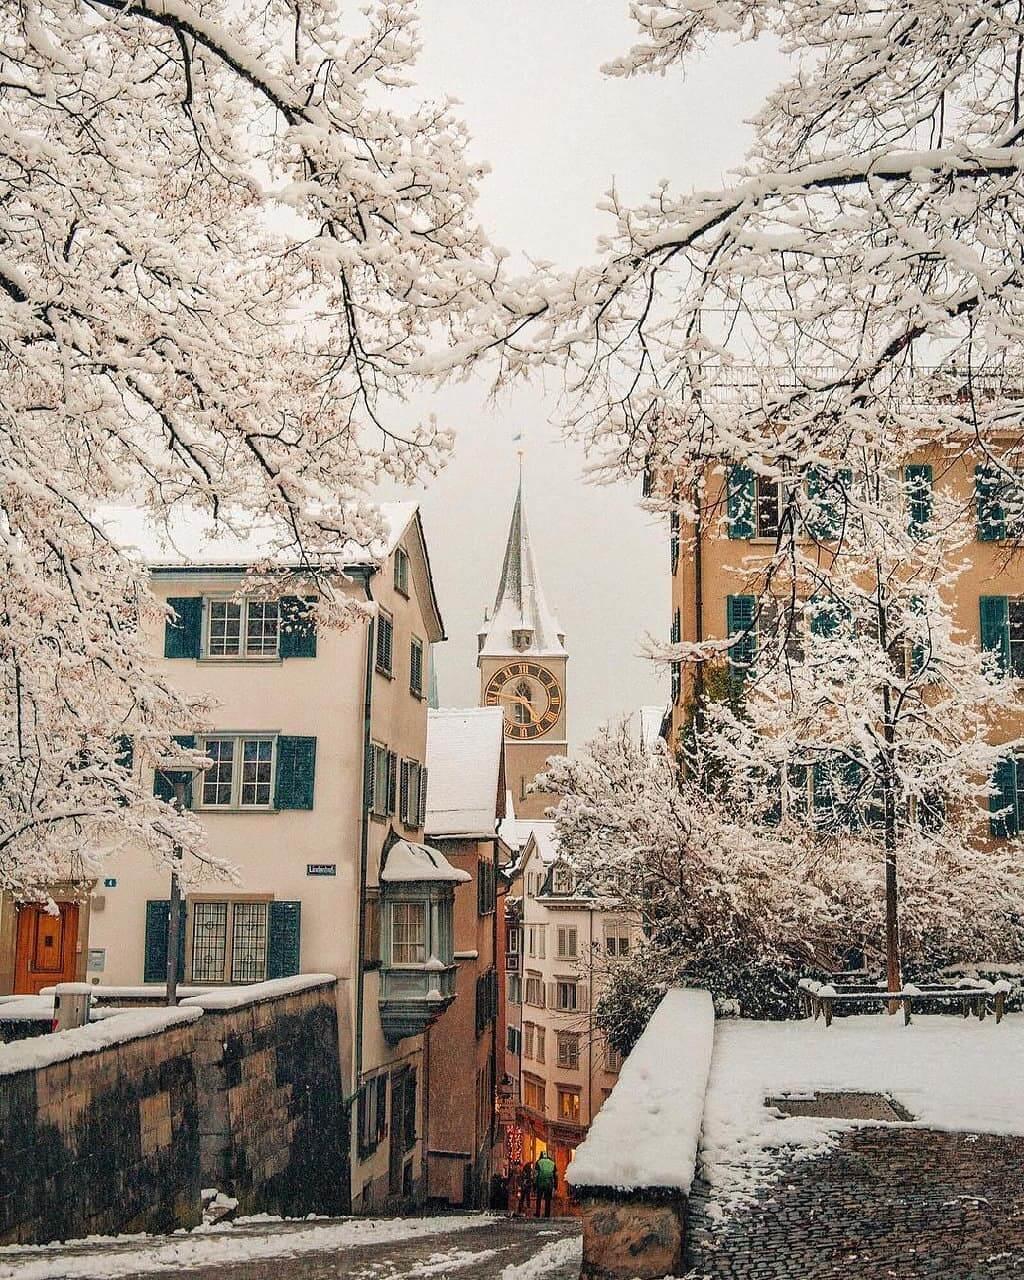 Thụy Sĩ, lãng mạn cảnh sắc mùa đông tựa tranh vẽ | VIETRAVEL